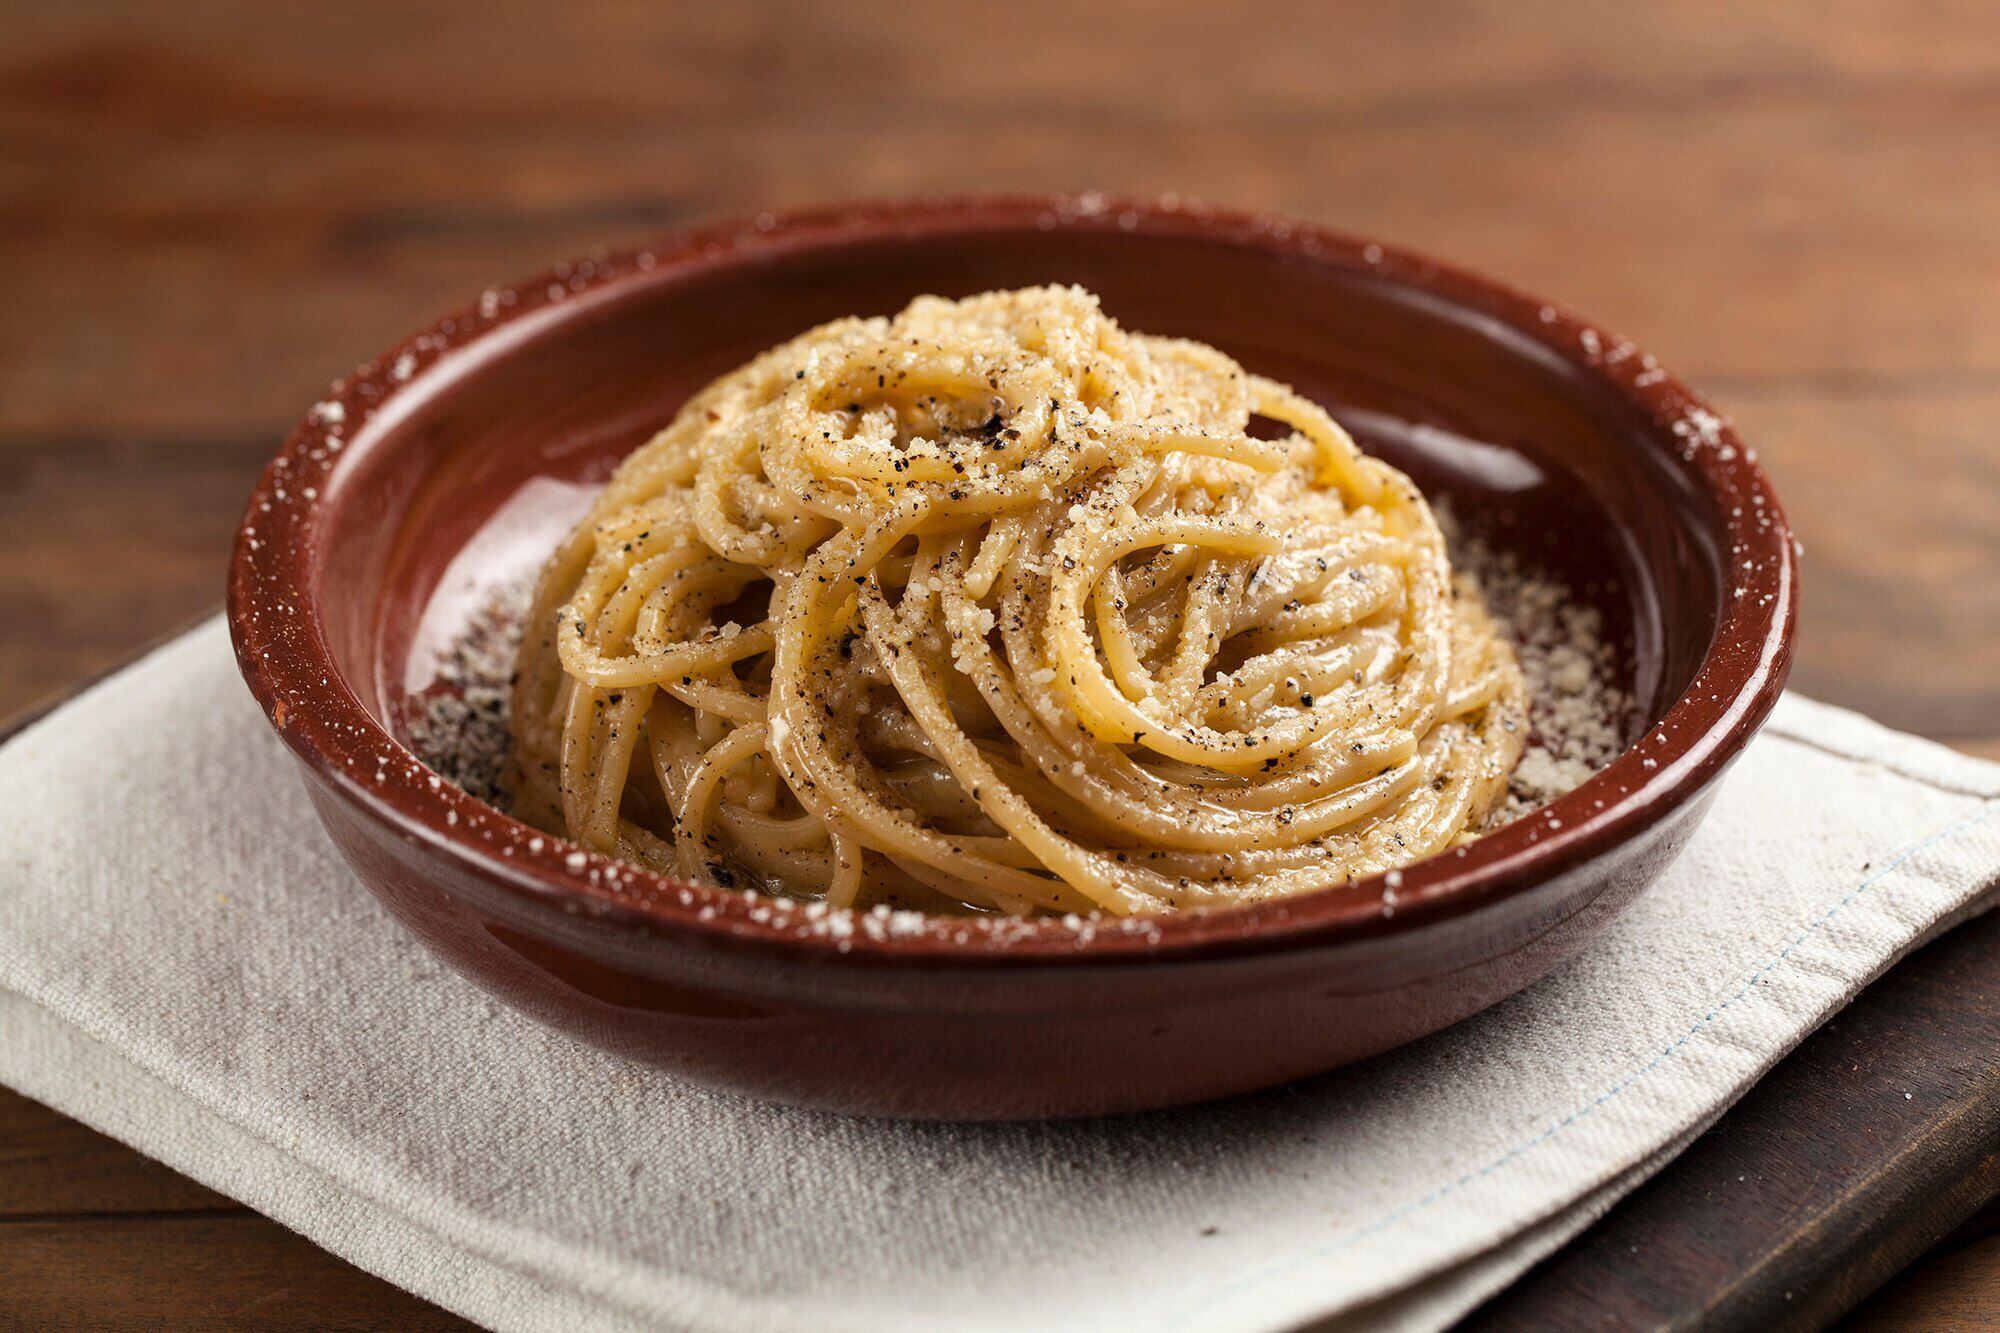 Spaghetti ao vôngole: um clássico italiano pouco conhecido no Brasil, Especial publicitário - Paganini Gastronomia